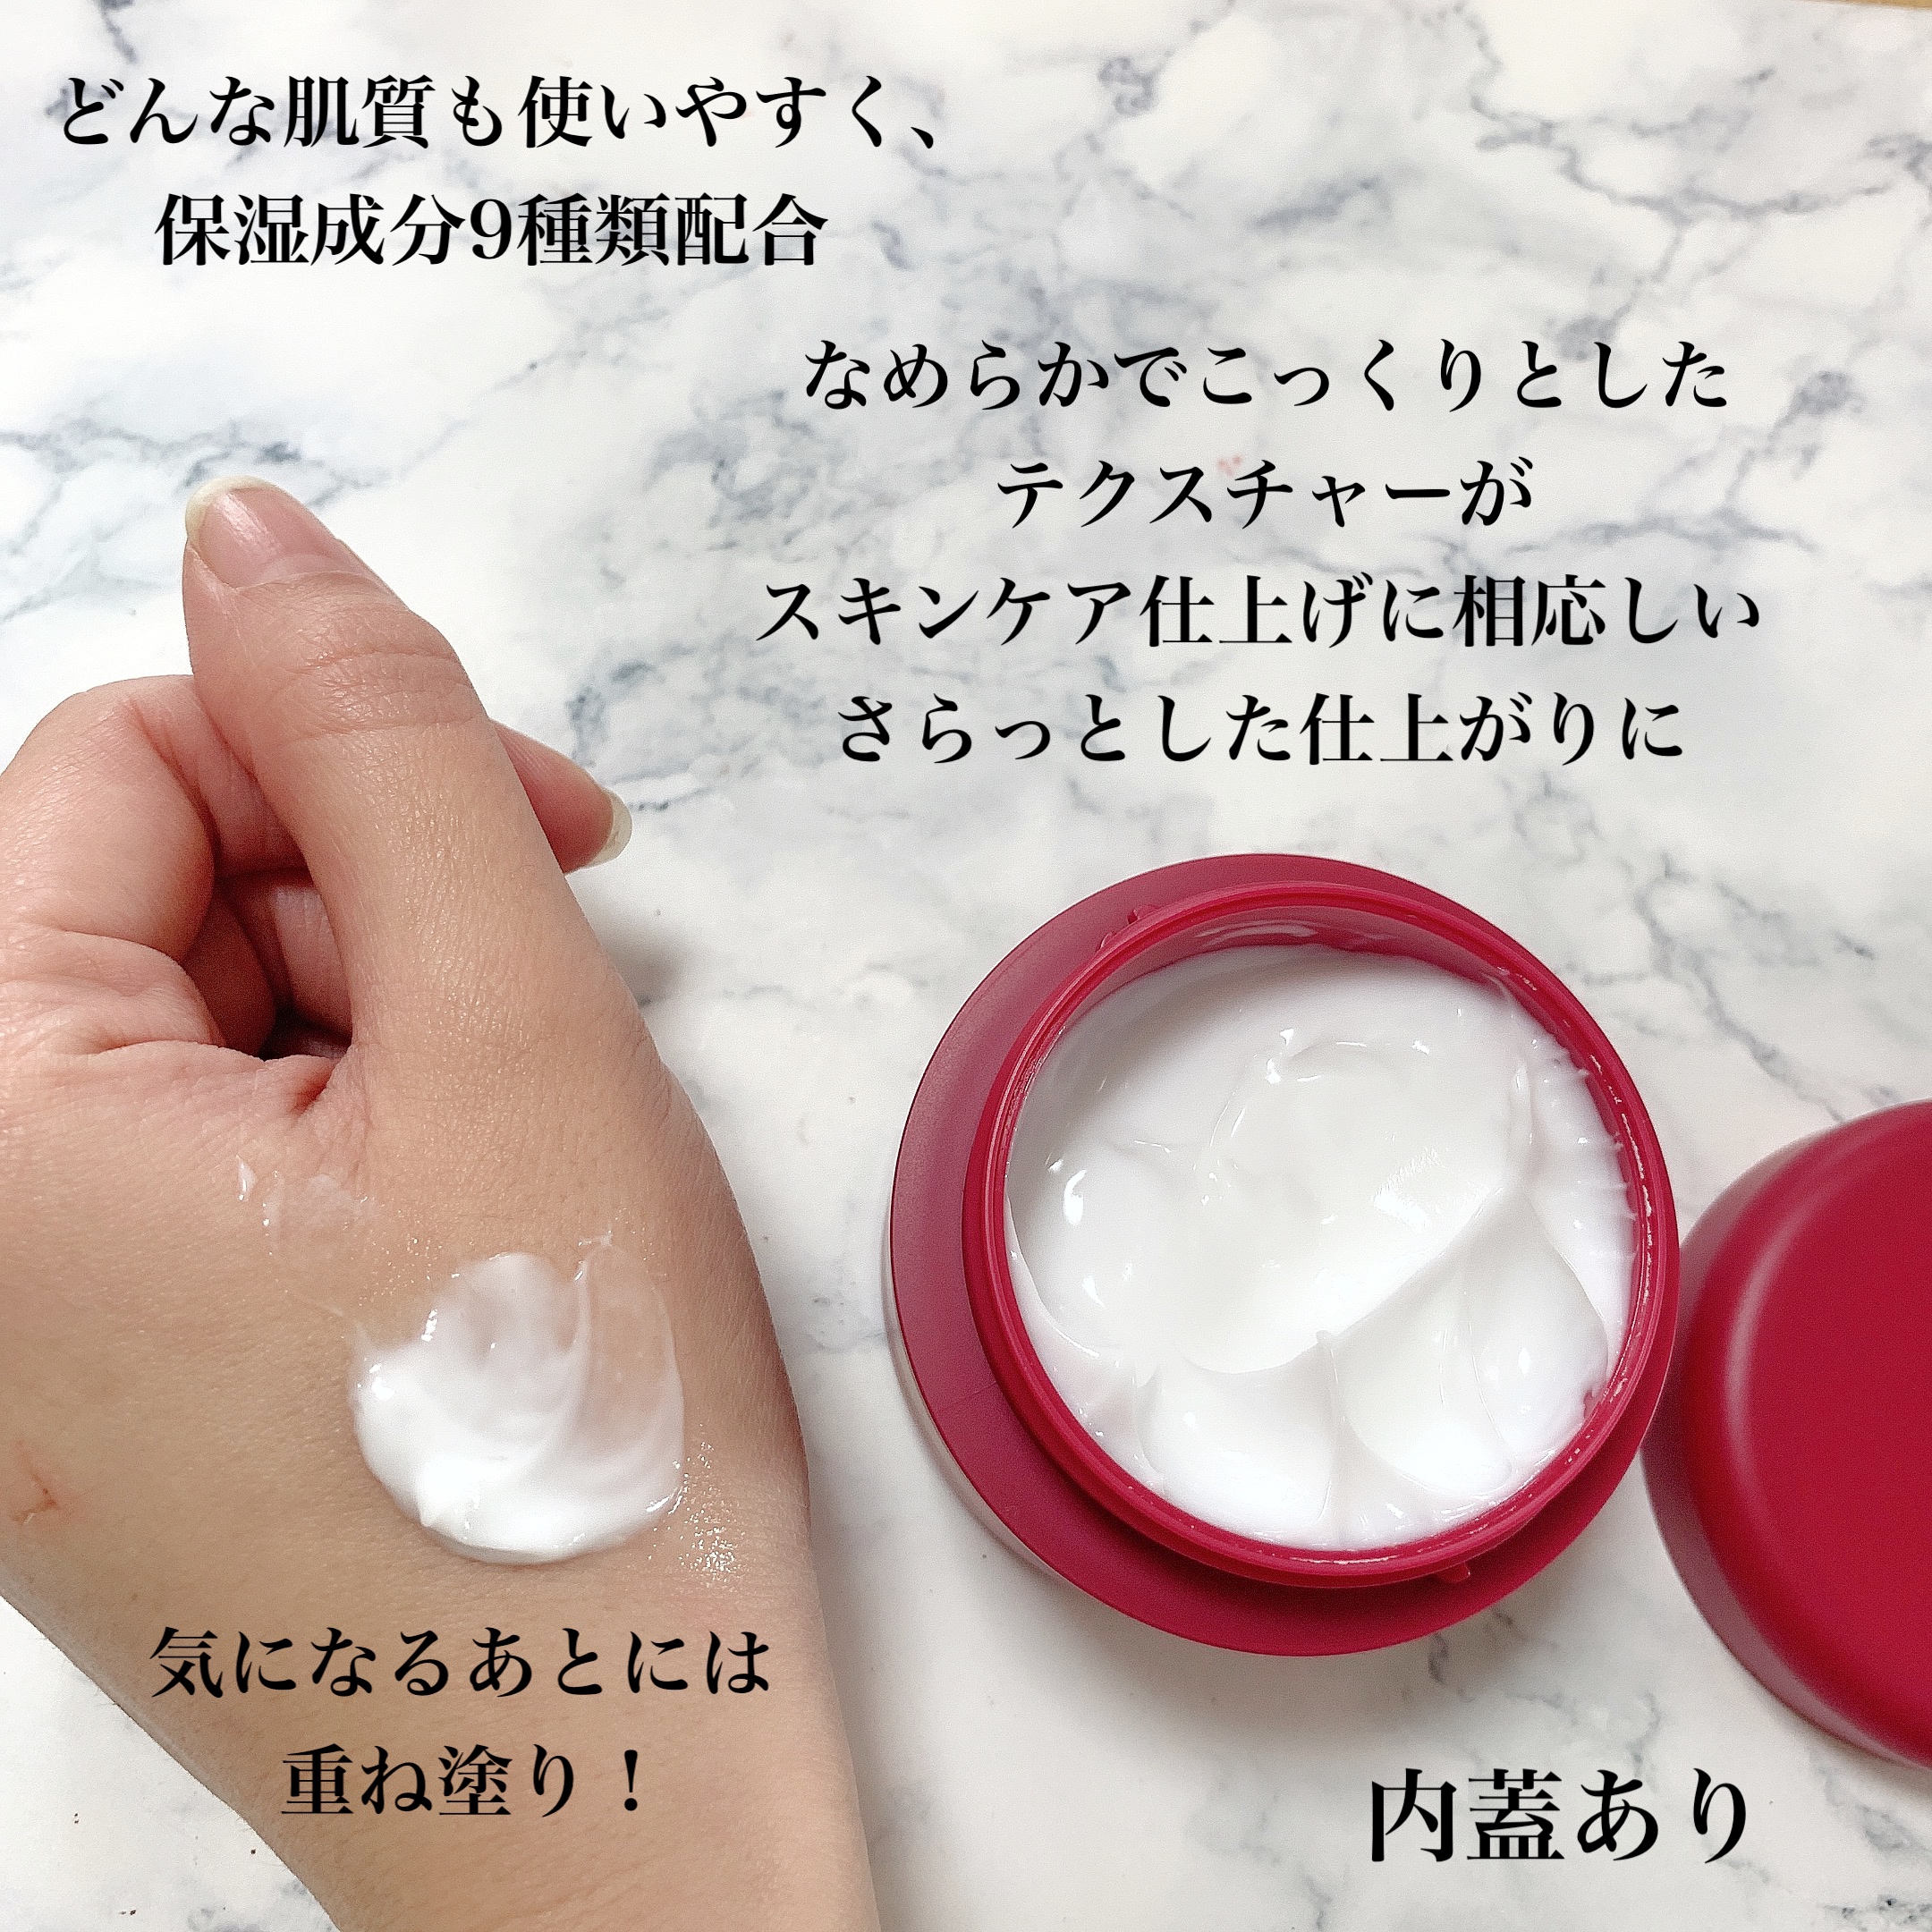 美潤花(MIJUNKA) ホワイト二ングクリームの良い点・メリットに関するまみやこさんの口コミ画像3